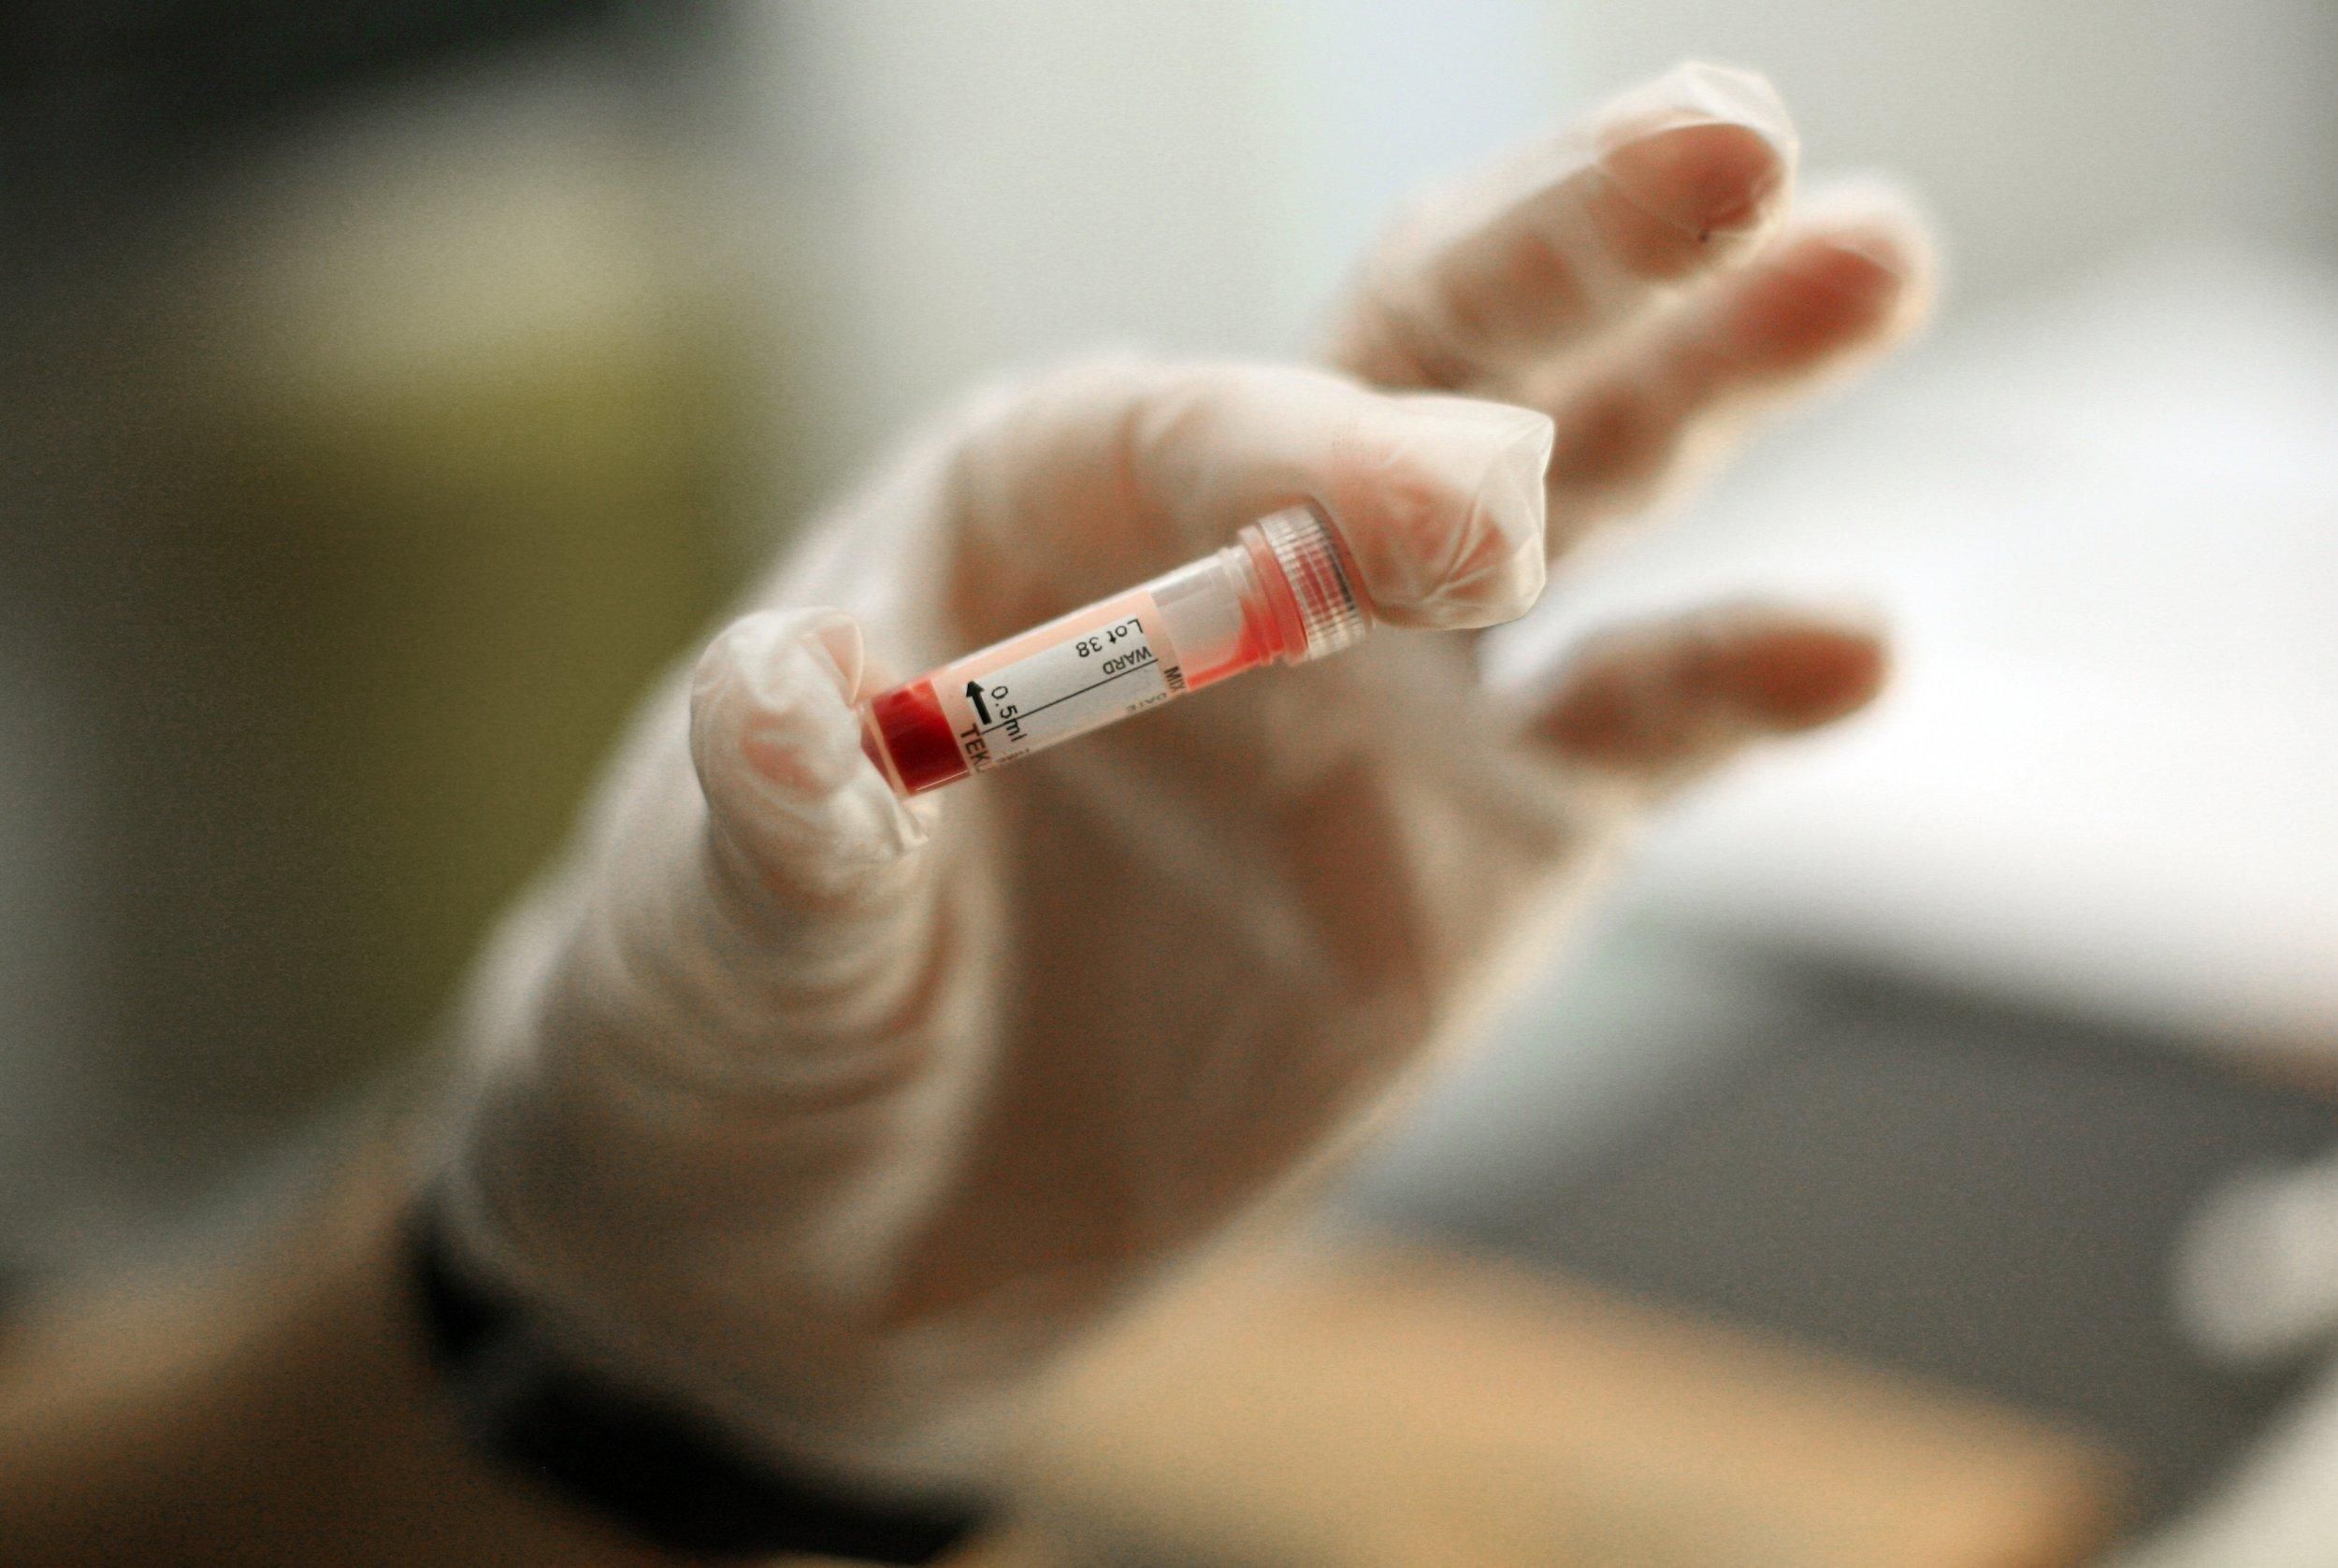 Приватна клініка приховала виявлений коронавірус у киянина: прокуратура відкрила справу